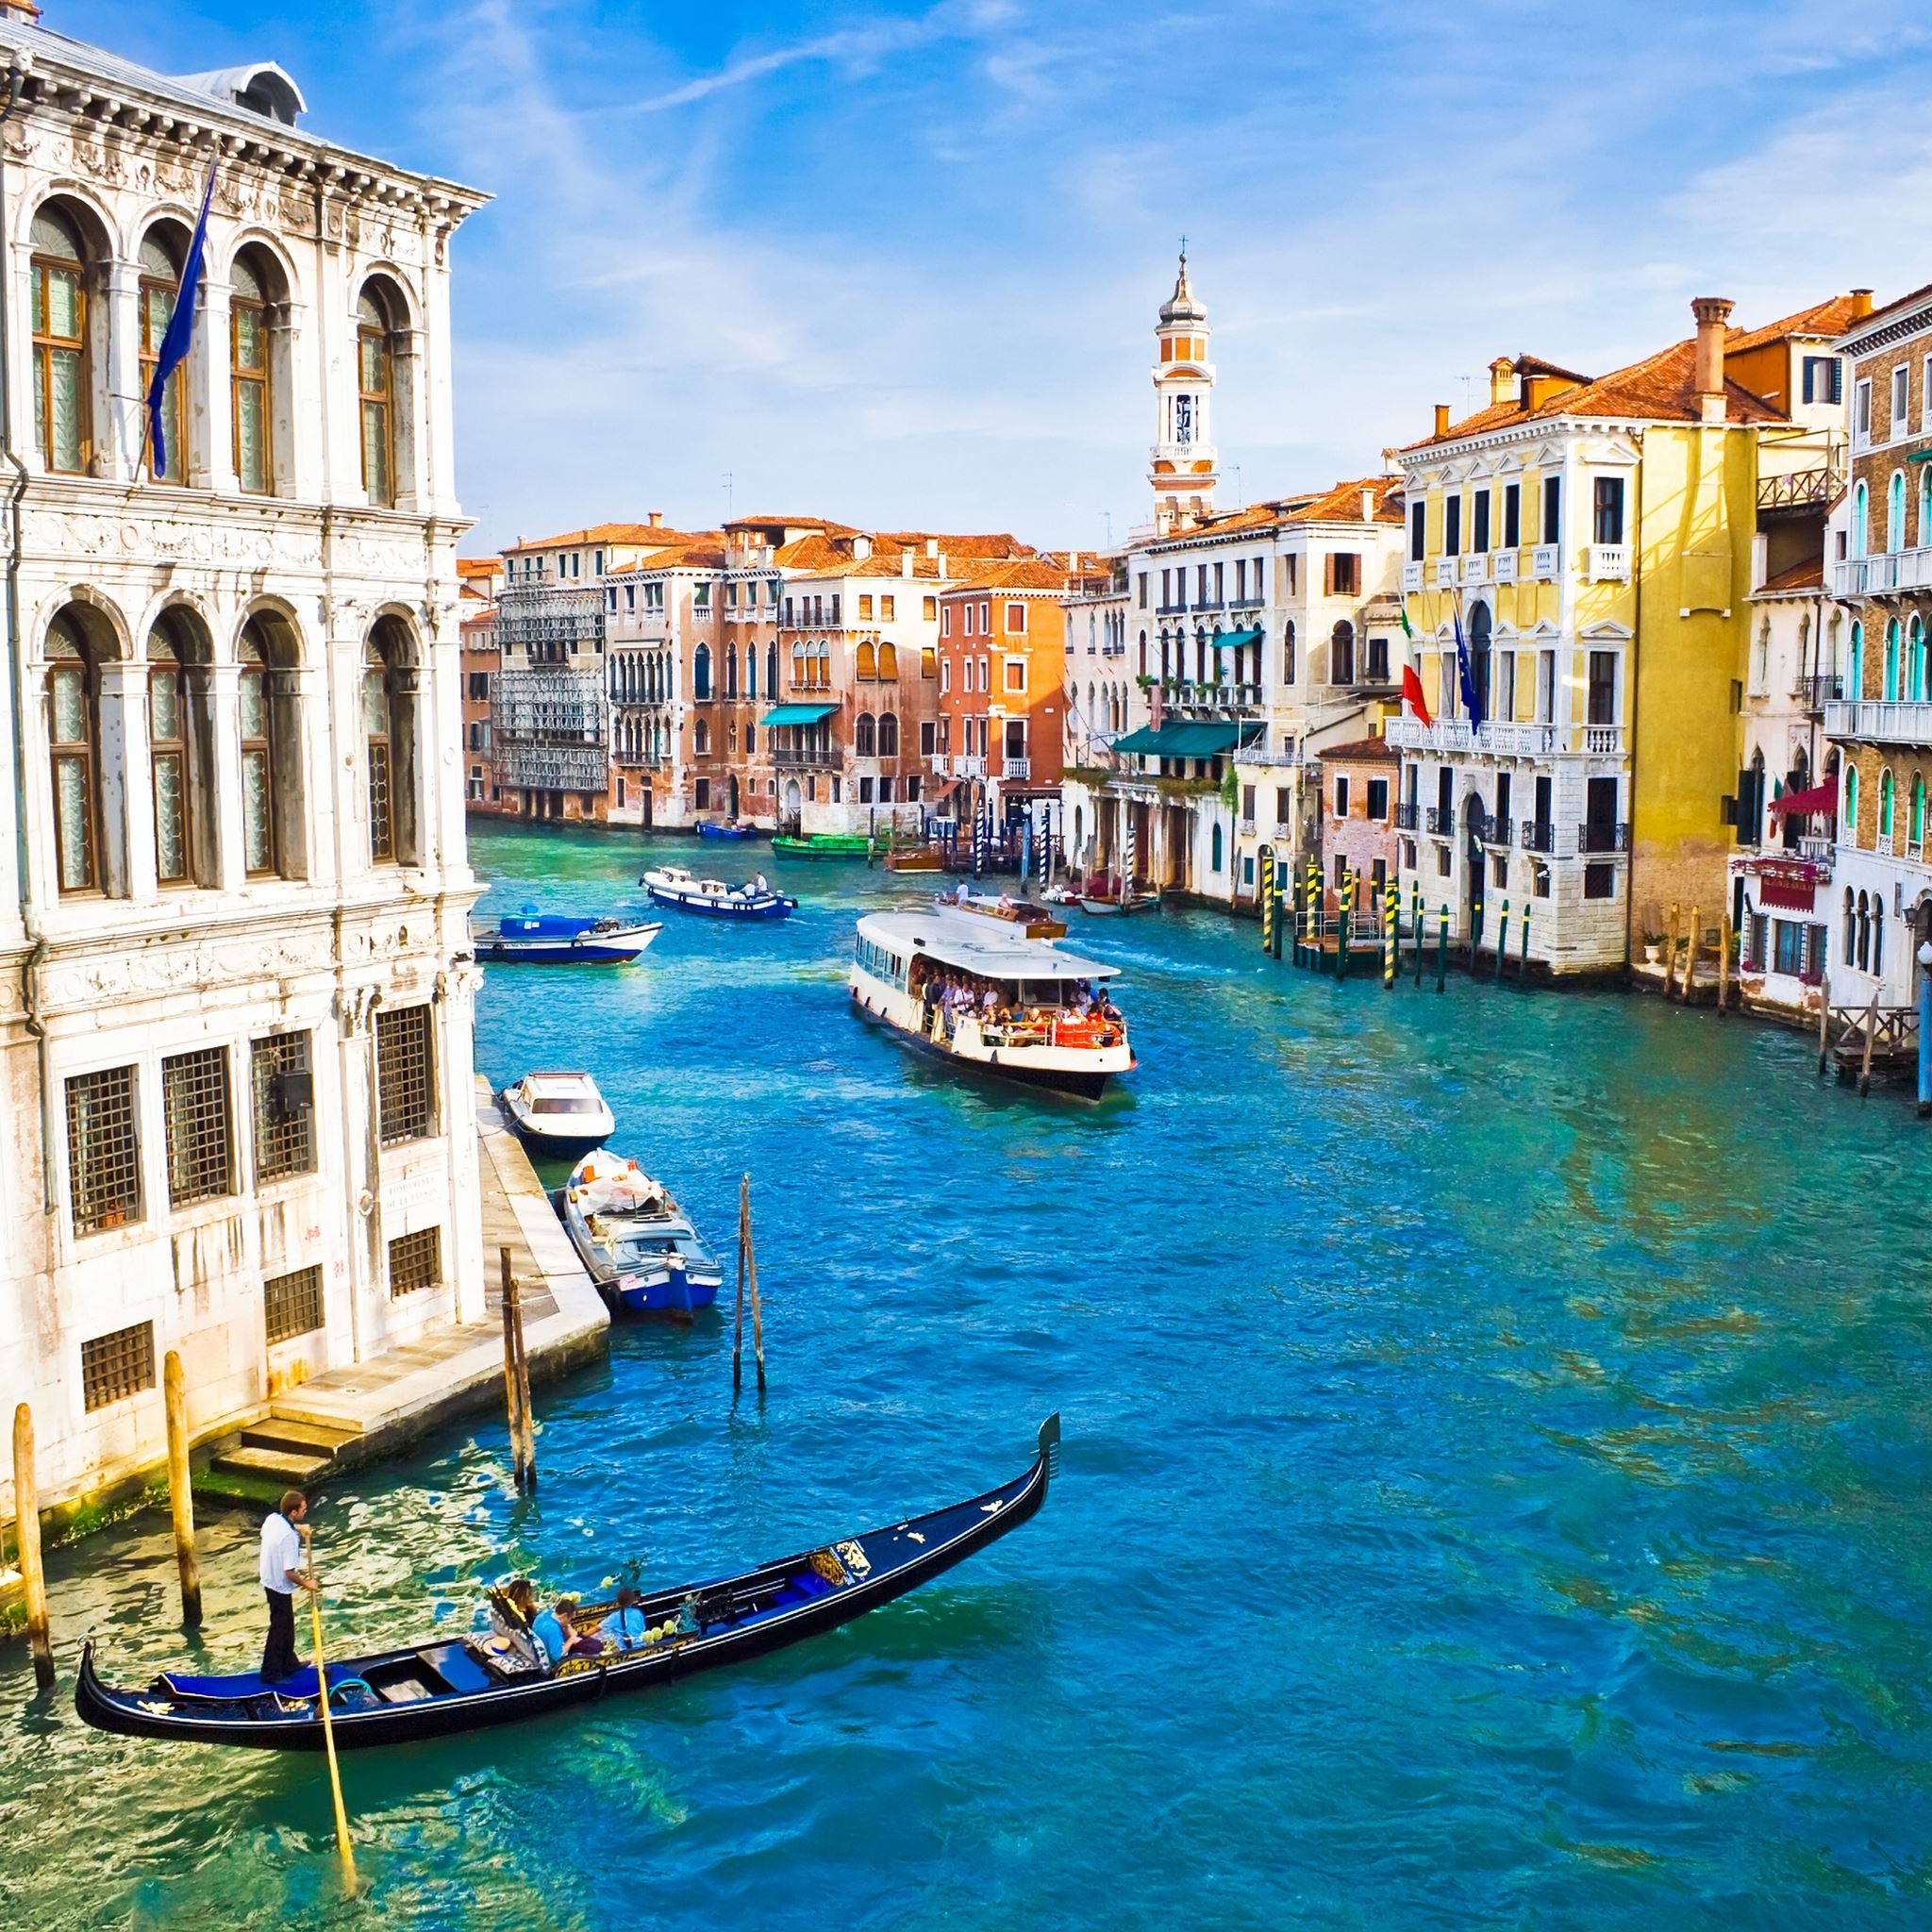 Beautiful Venice Canal iPad Air wallpaper 